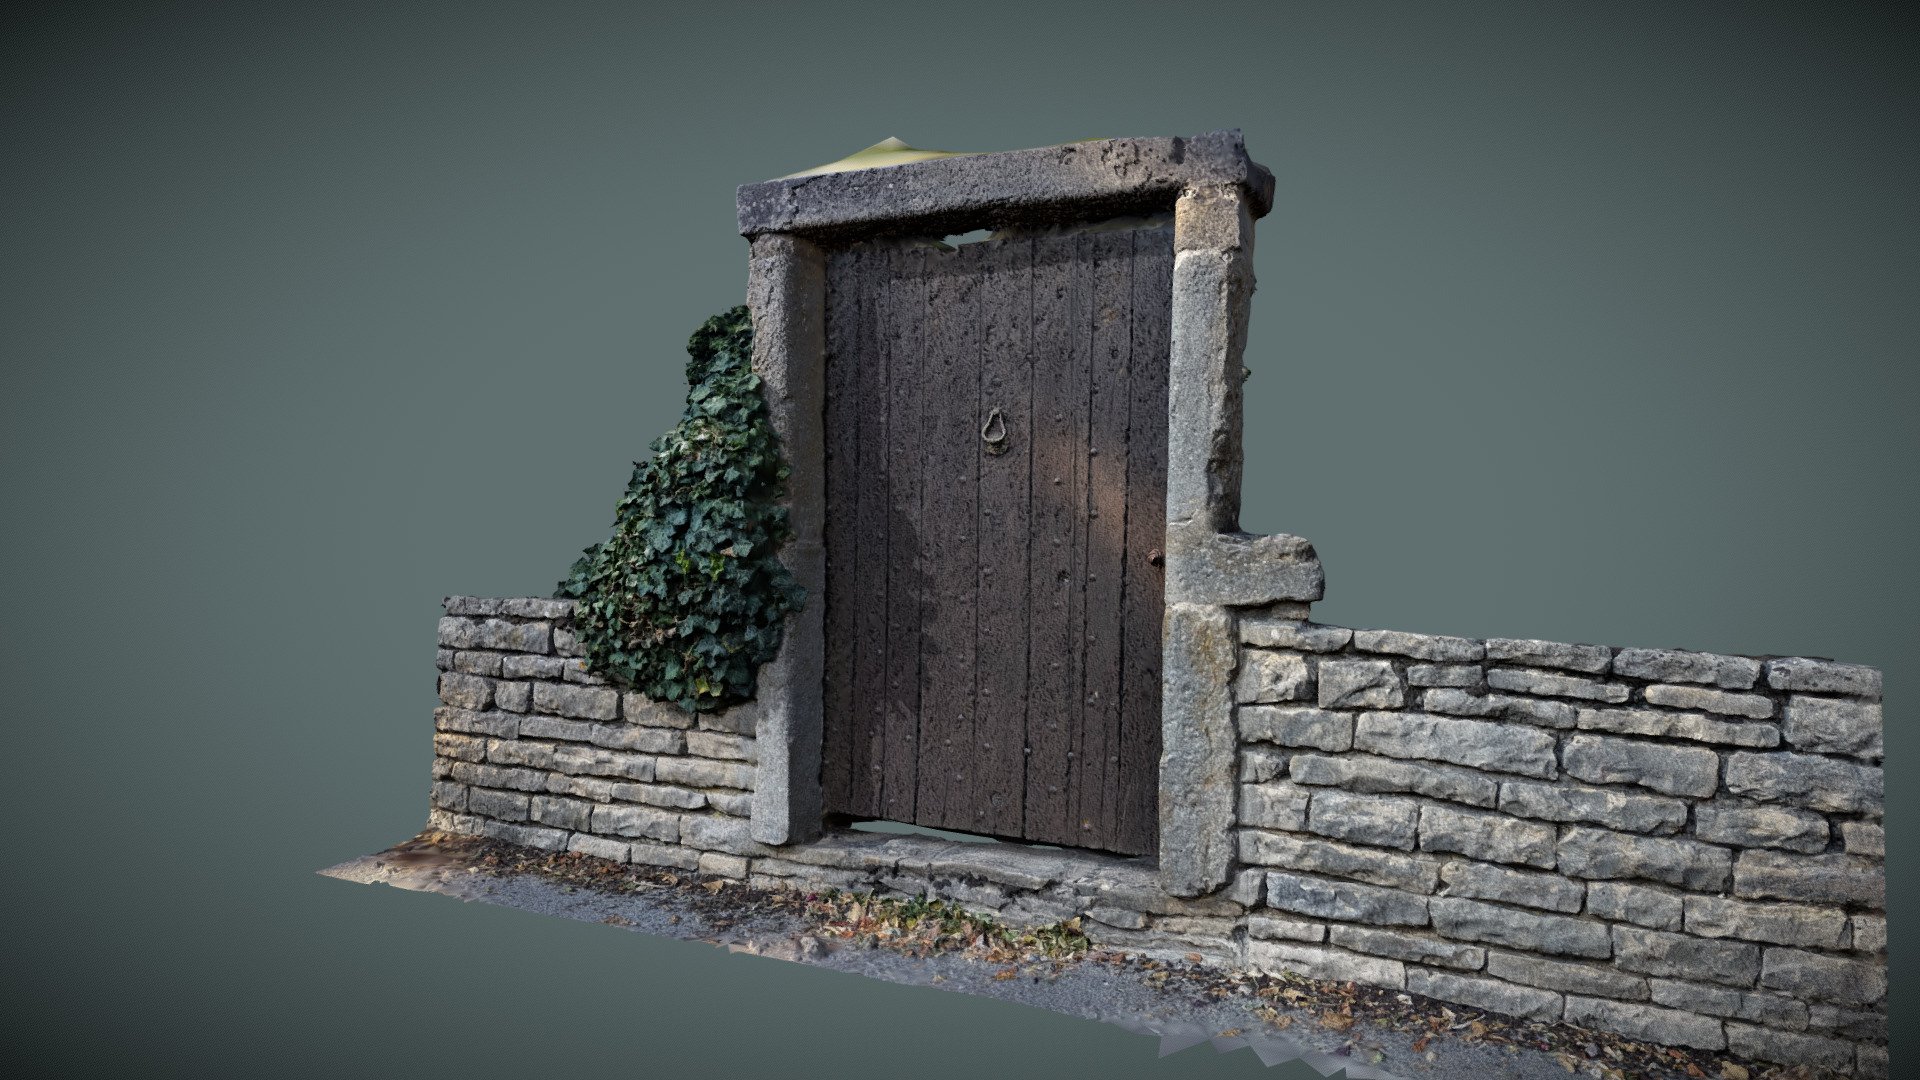 A old Wooden door.

Textures:
Diffuse 
Normal - Old door - 3D model by zeoin 3d model